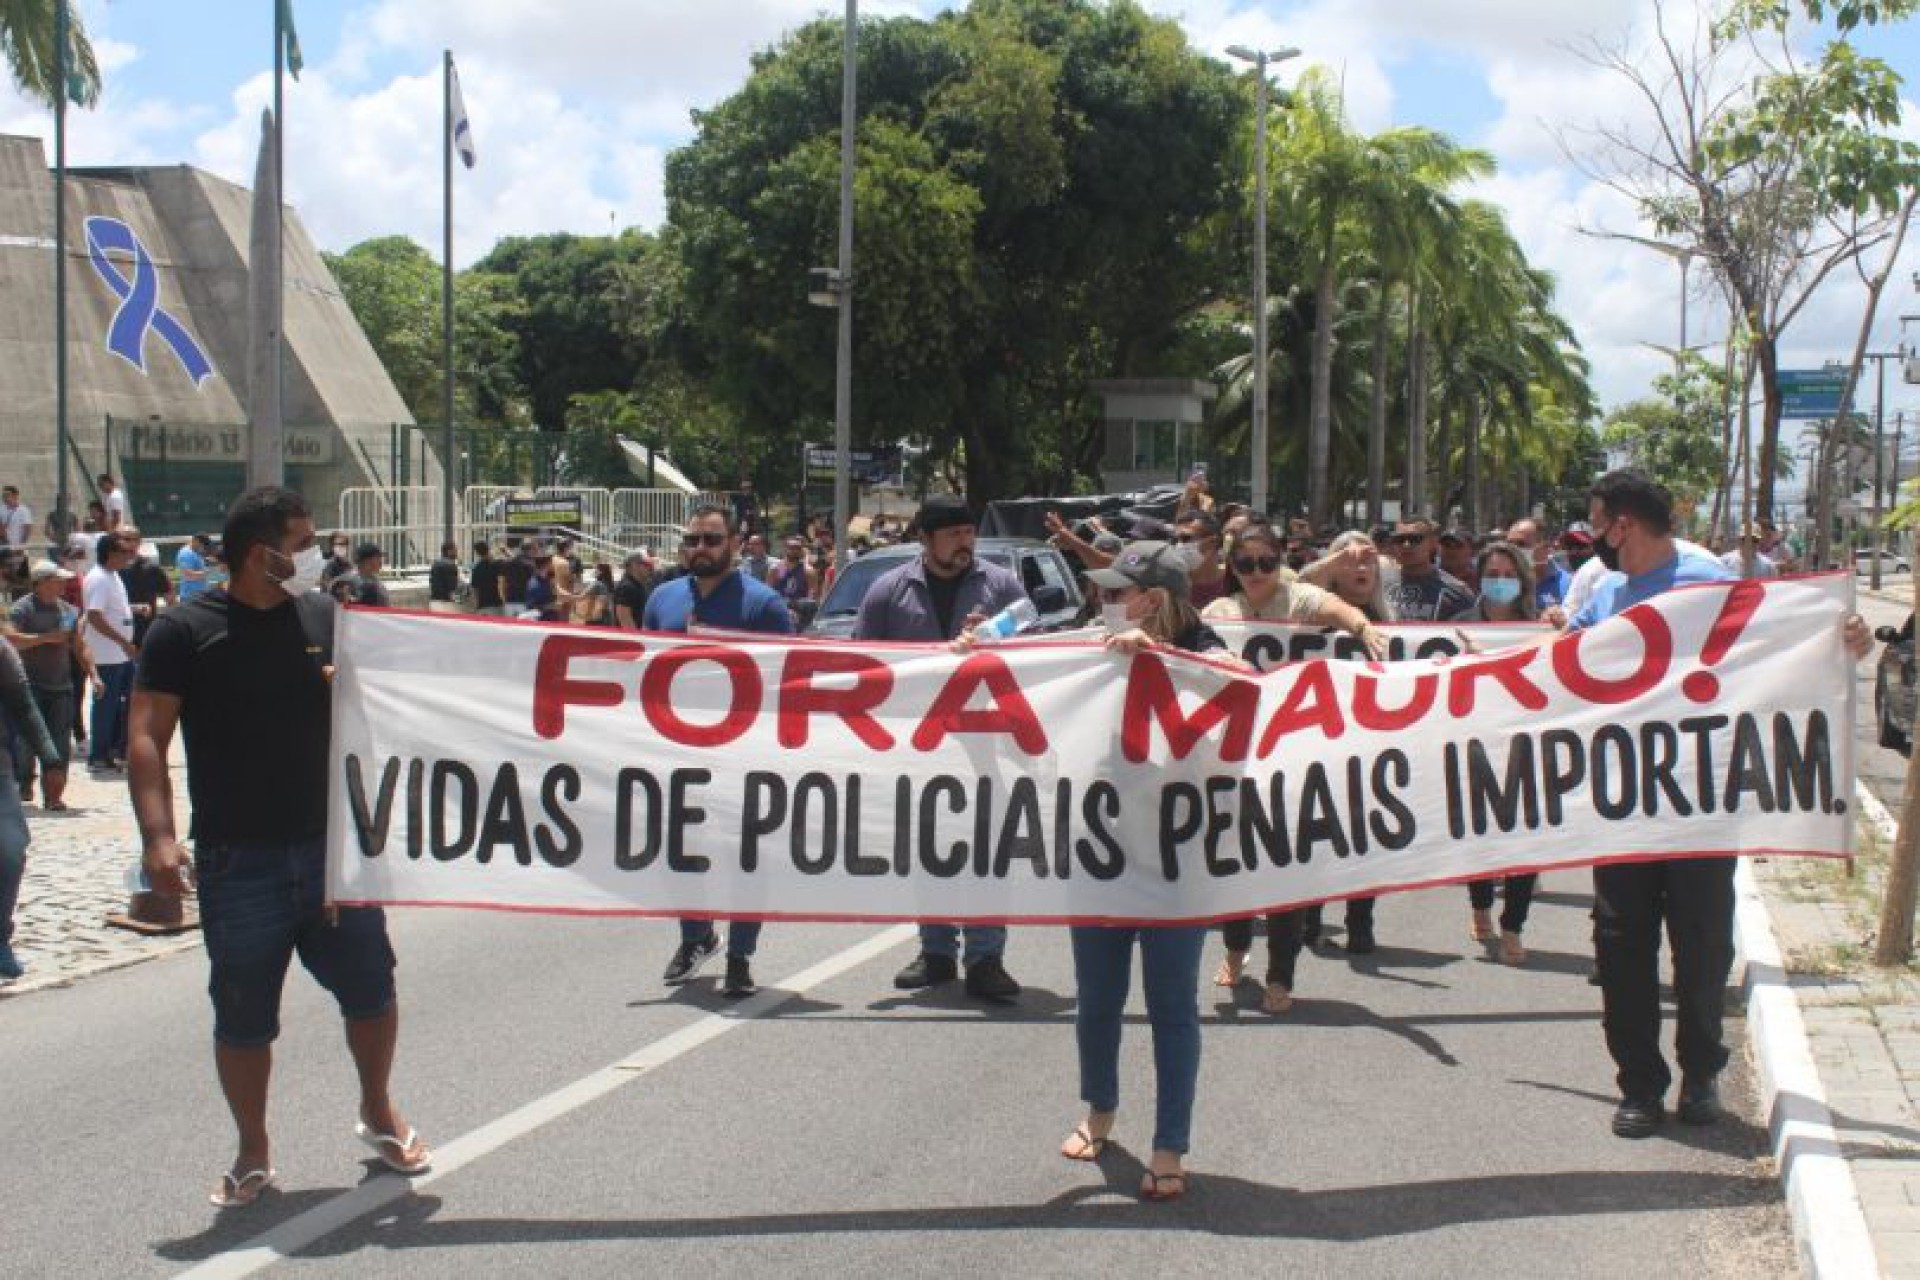 ￼POLICIAIS PENAIS realizaram manifestação em frente à Assembleia Legislativa do Estado em novembro passado (Foto: Divulgação/Sindicato dos Policiais Penais)